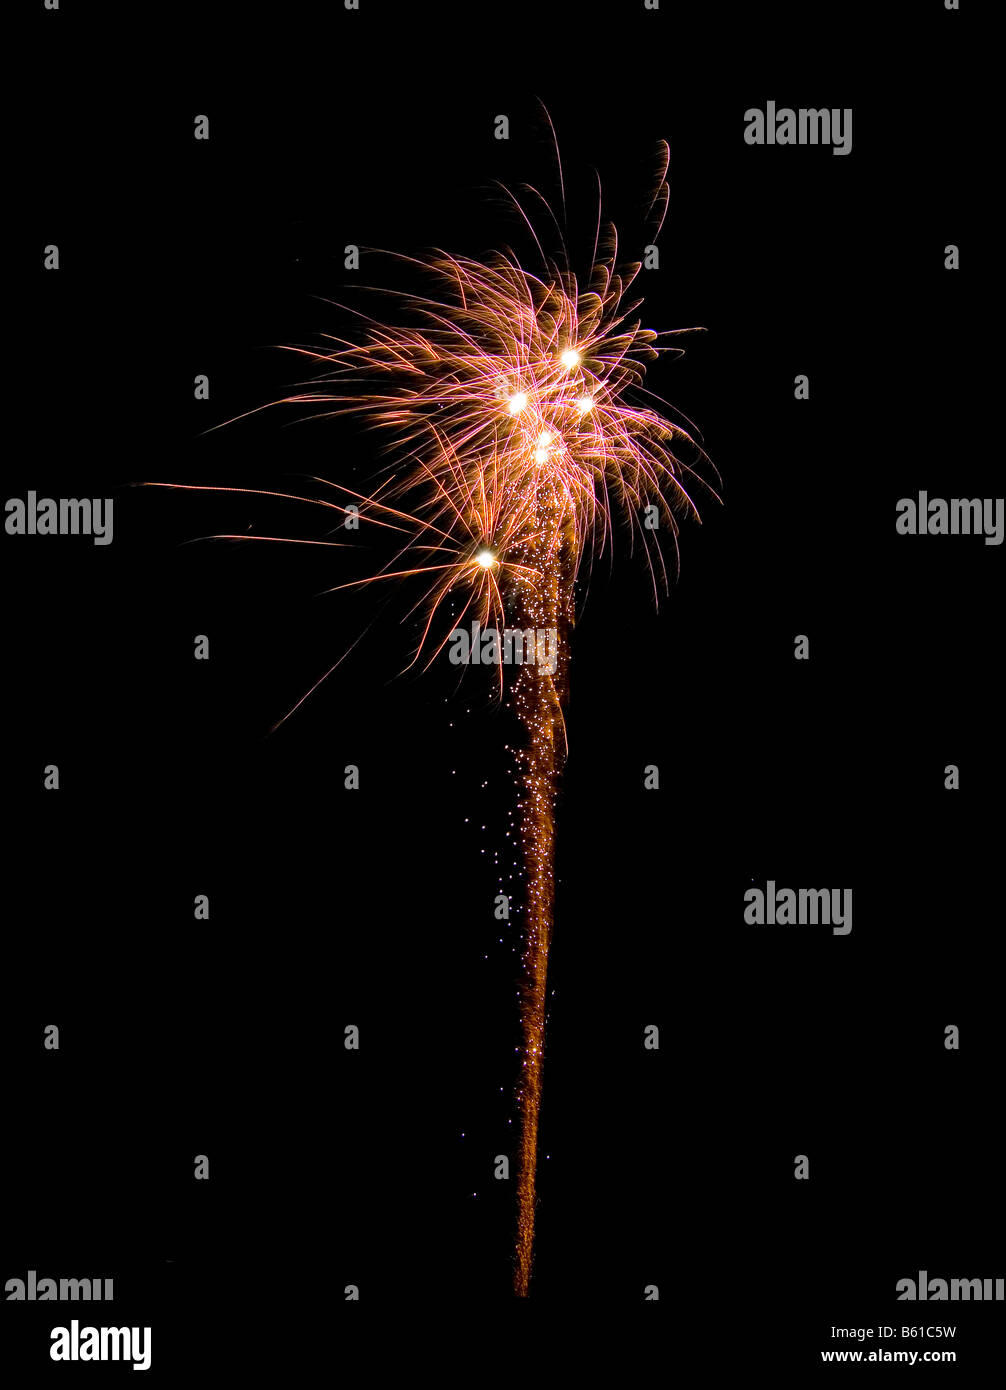 Immagine di un esplosione di un fuoco d'artificio durante una celebrazione Foto Stock